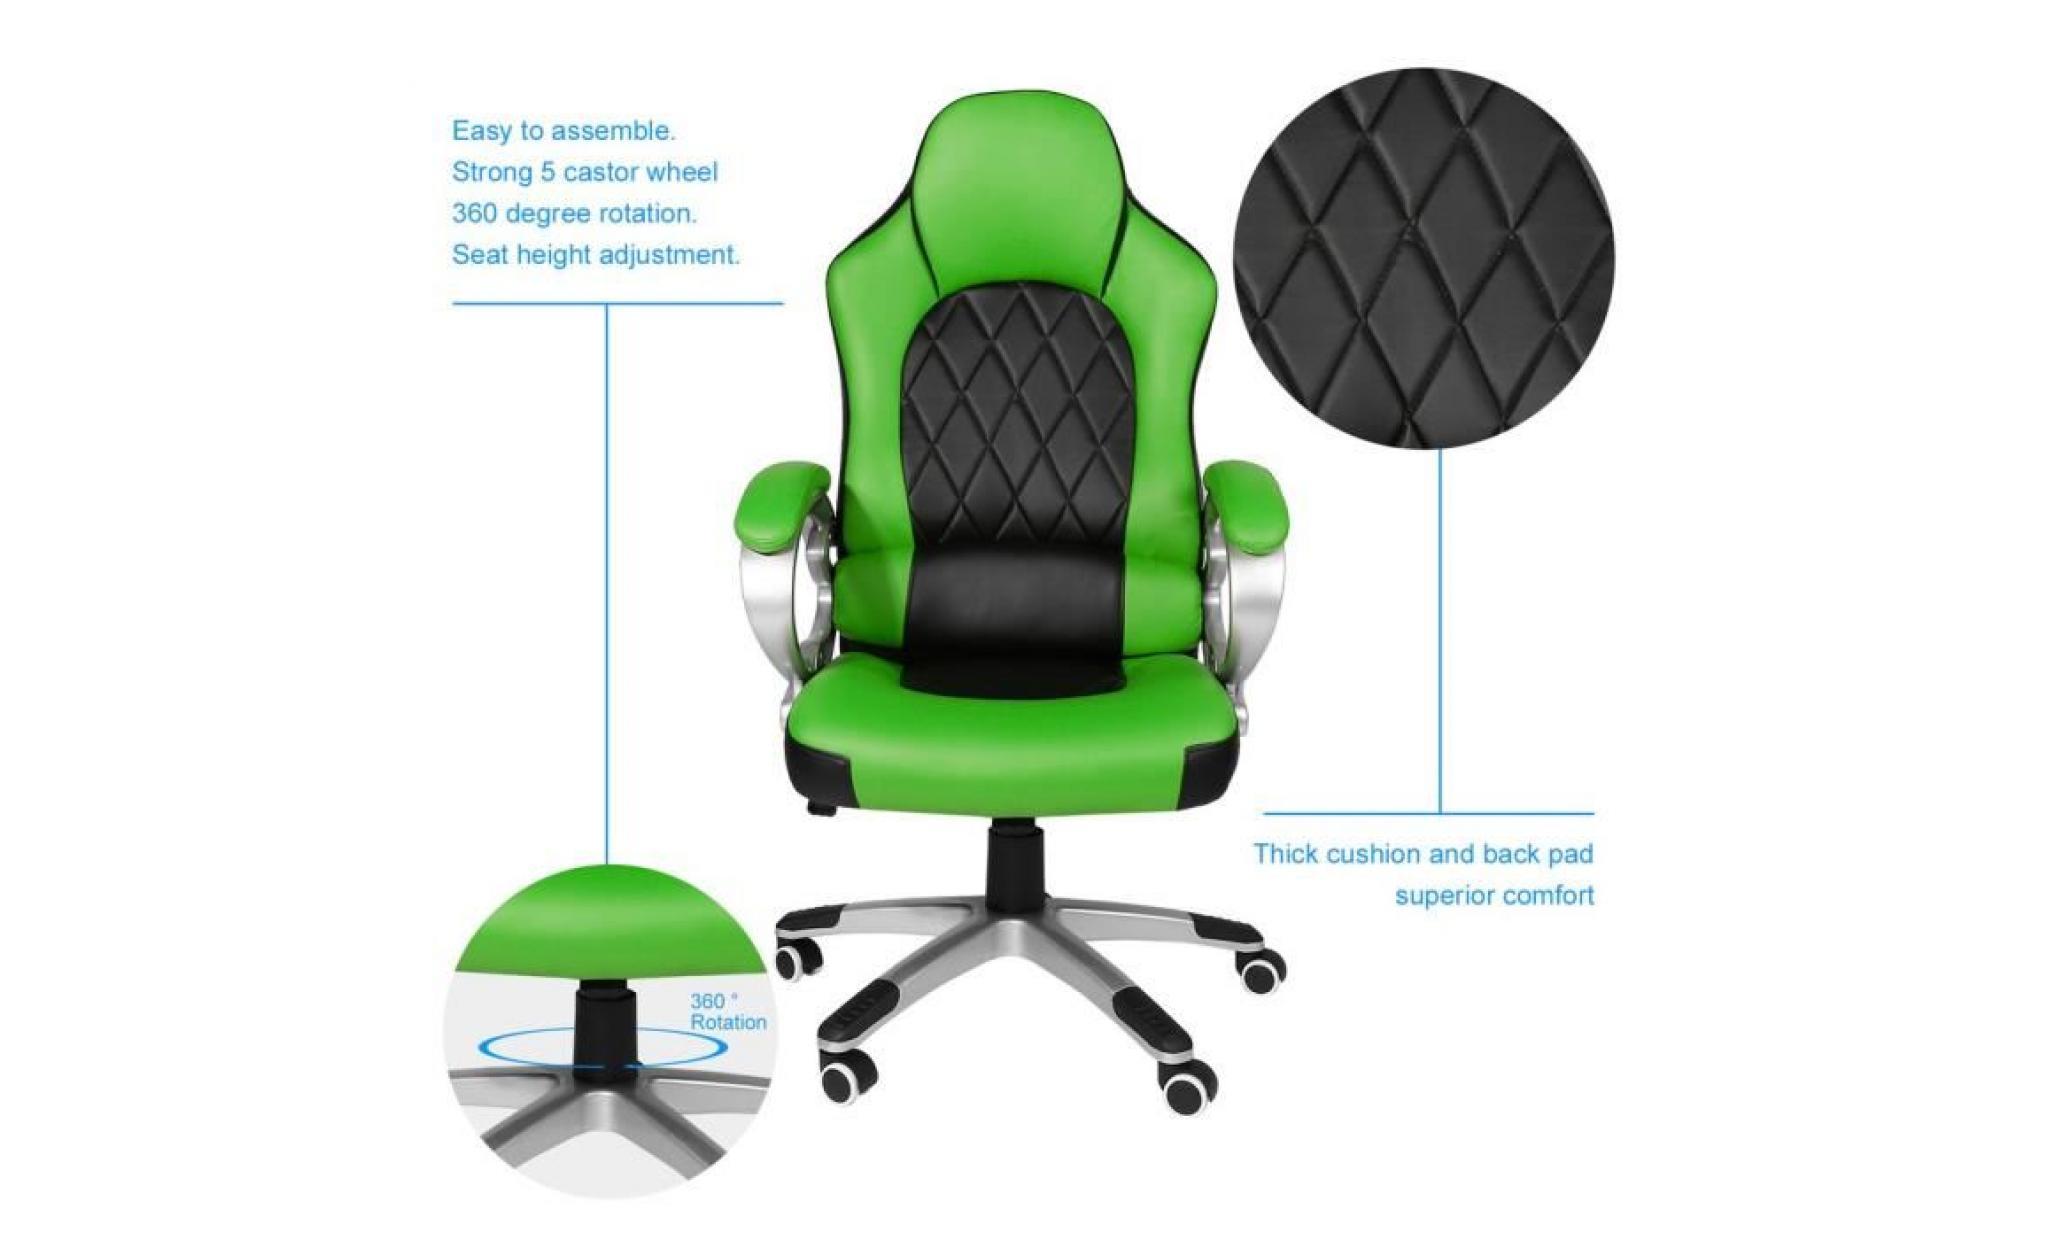 fauateuil gaming fauteuil de jeu vidéo chaise de bureau de maison vert noir pas cher